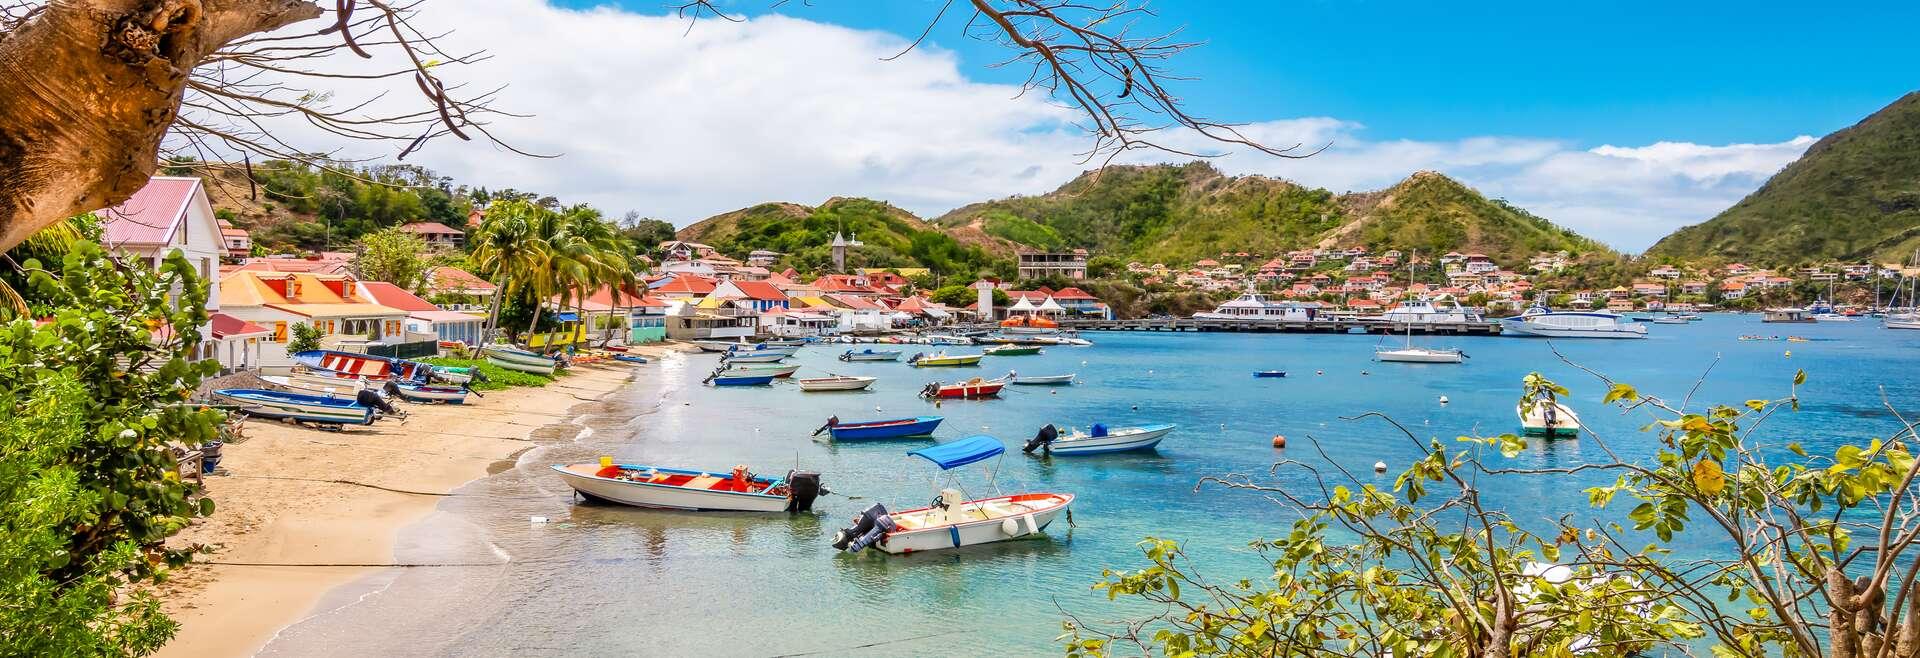 Sprachaufenthalt Guadeloupe, Strand - Boote